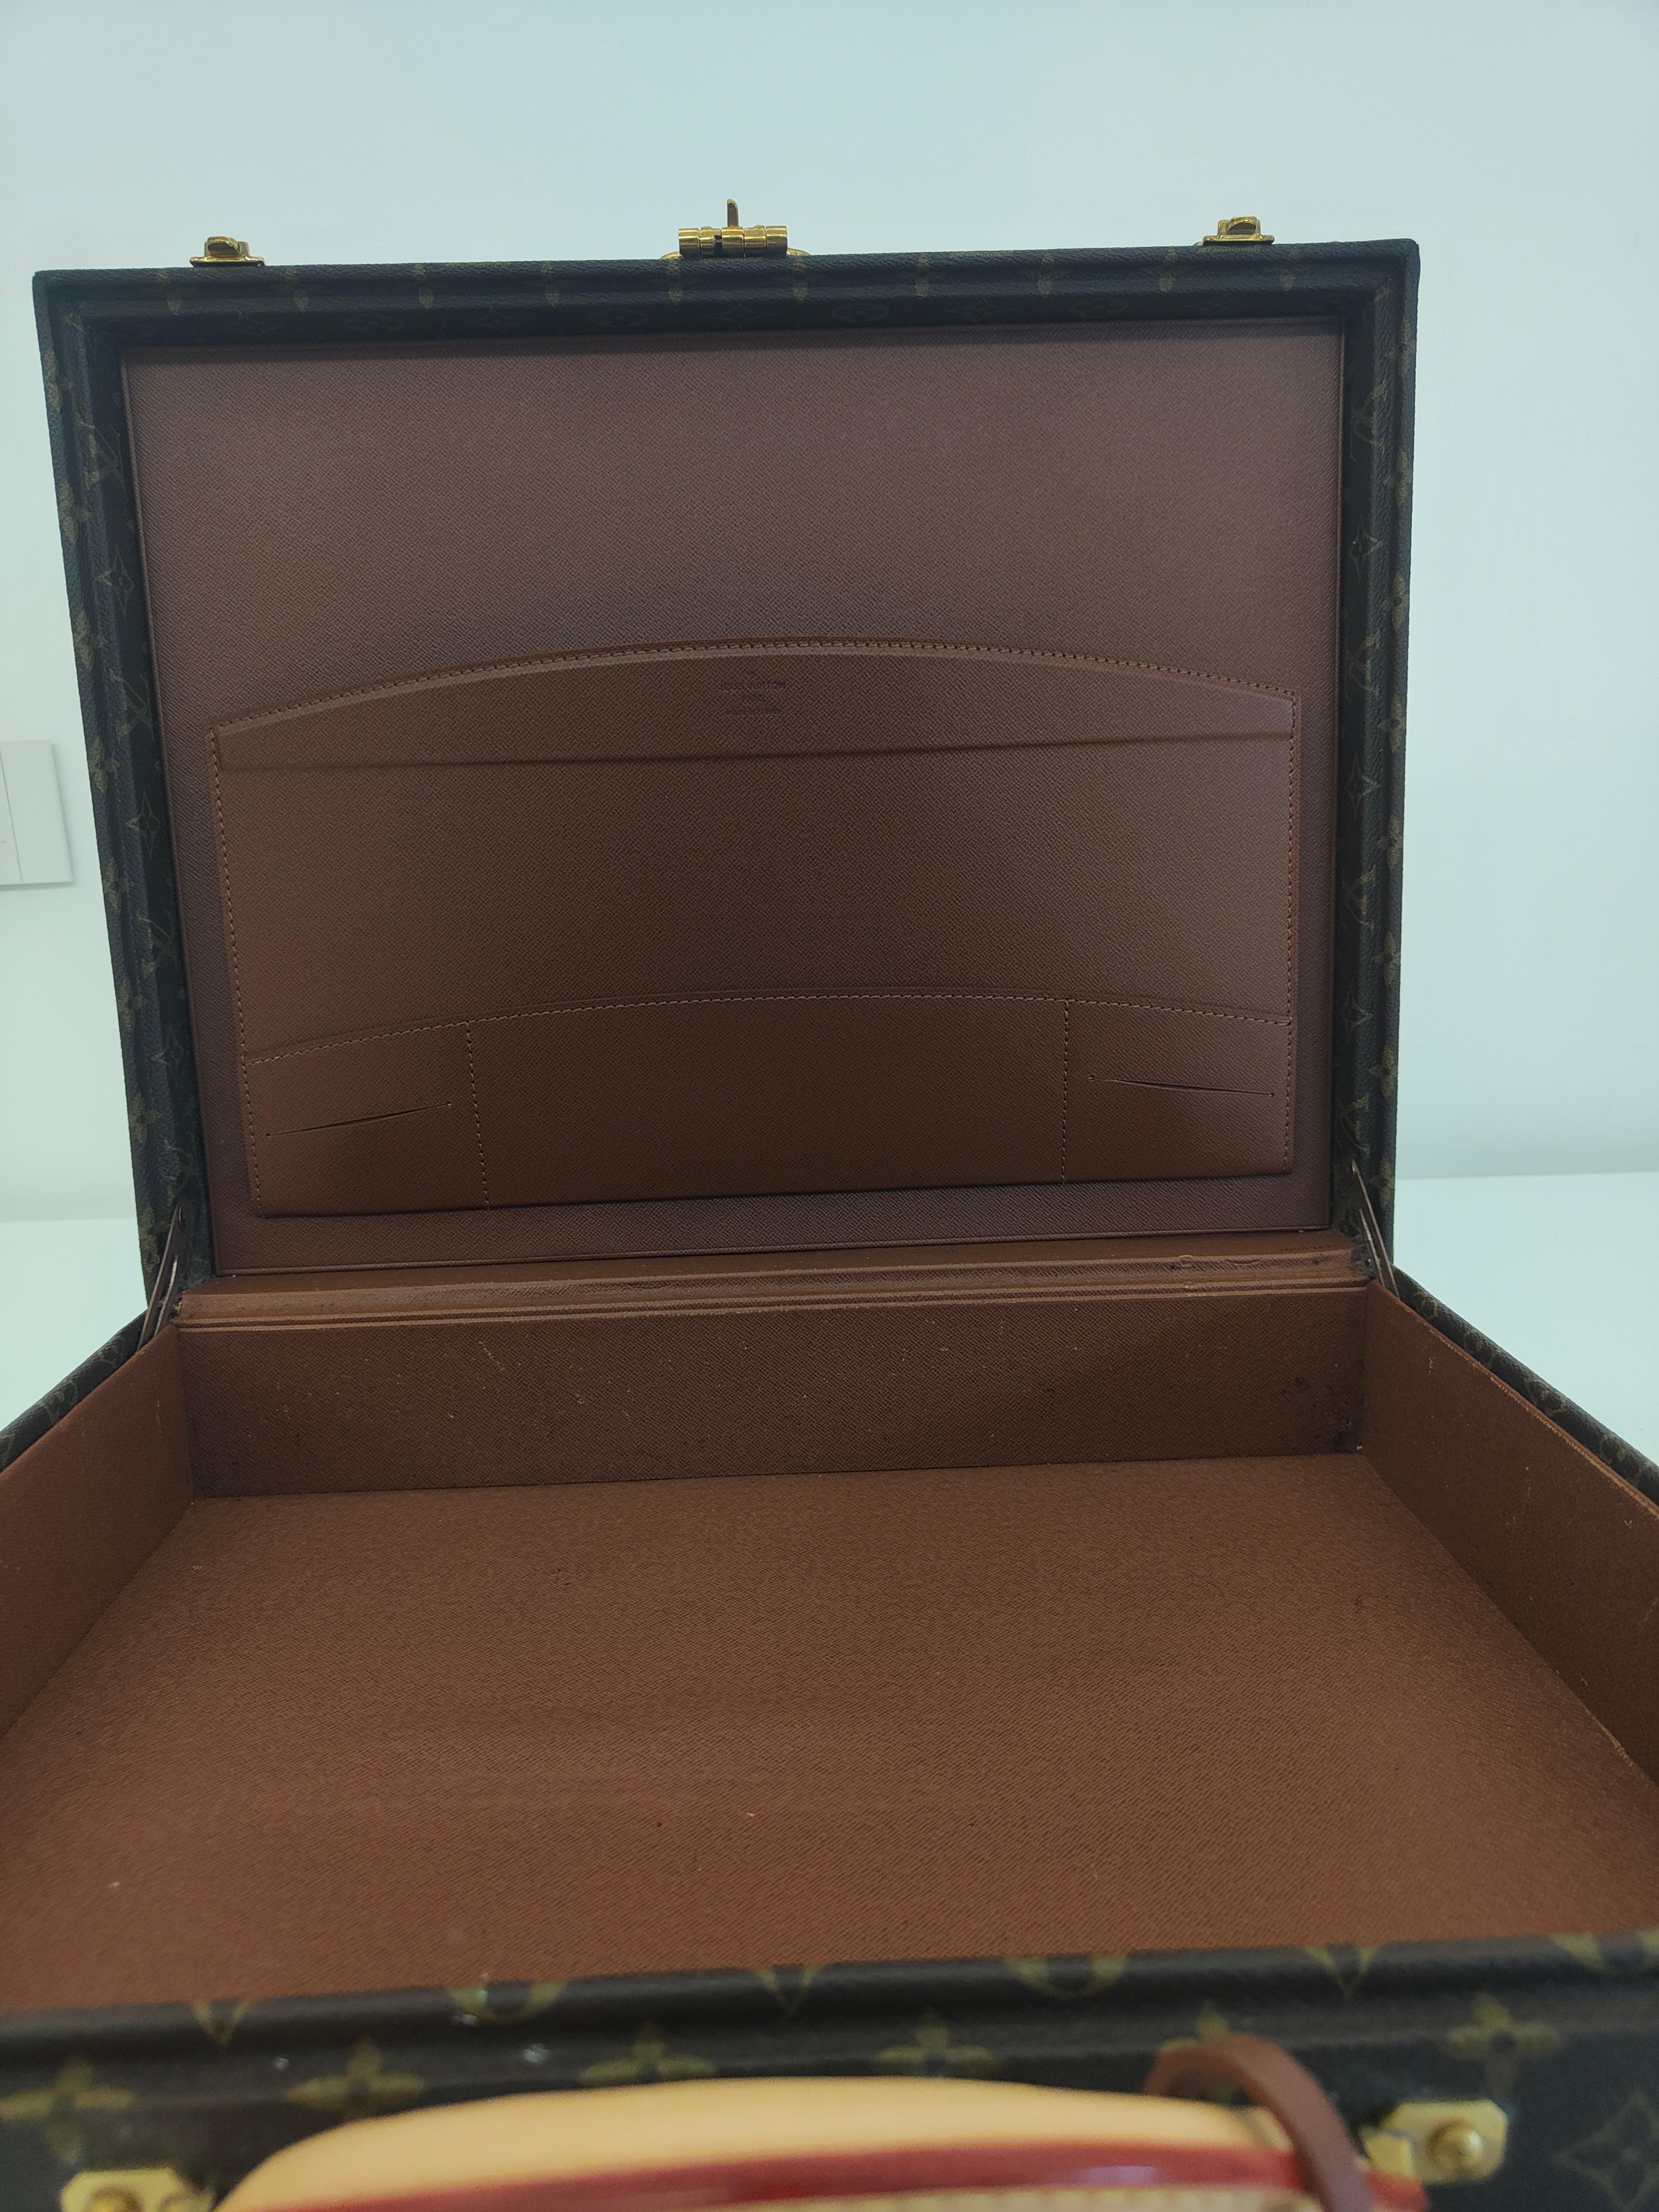 Louis Vuitton President Briefcase
mesures : 44*34*11